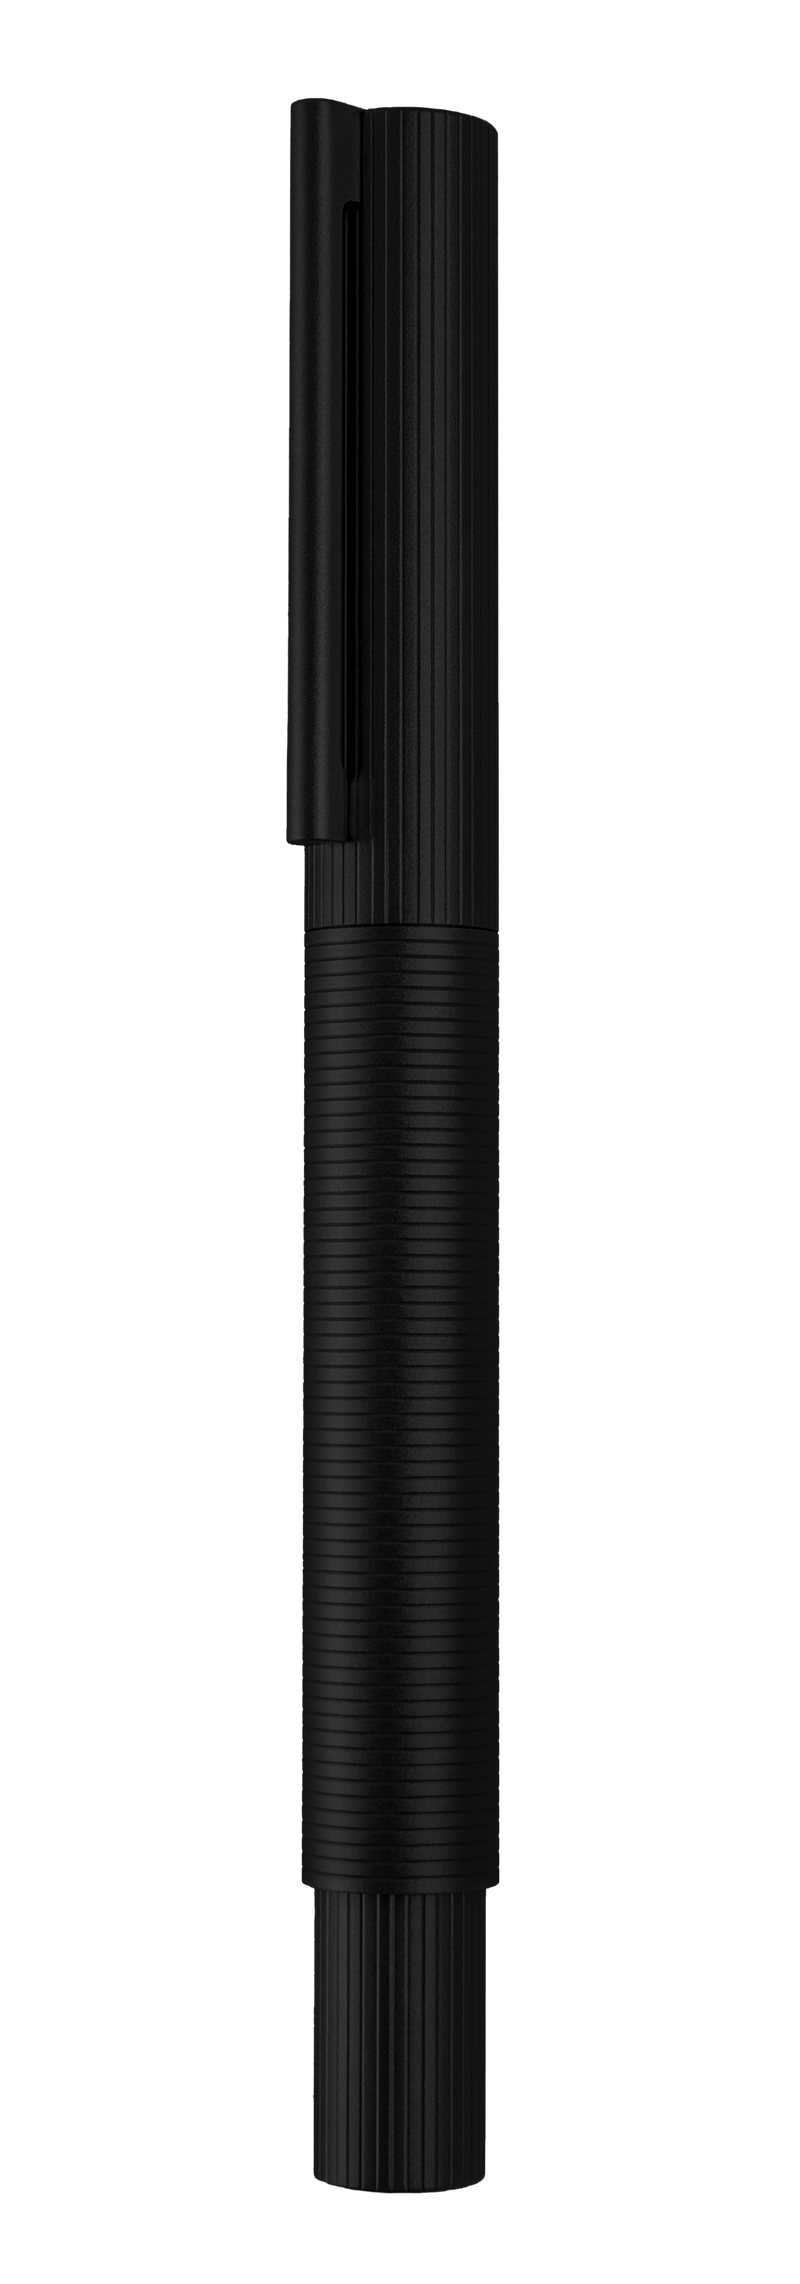 עט נובע שחור בציפוי  PVD עם ציפורן זהב 18 קראט ומנגנון ייחודי לשאיבת דיו  | עיצוב 08 | OTTO HUTT